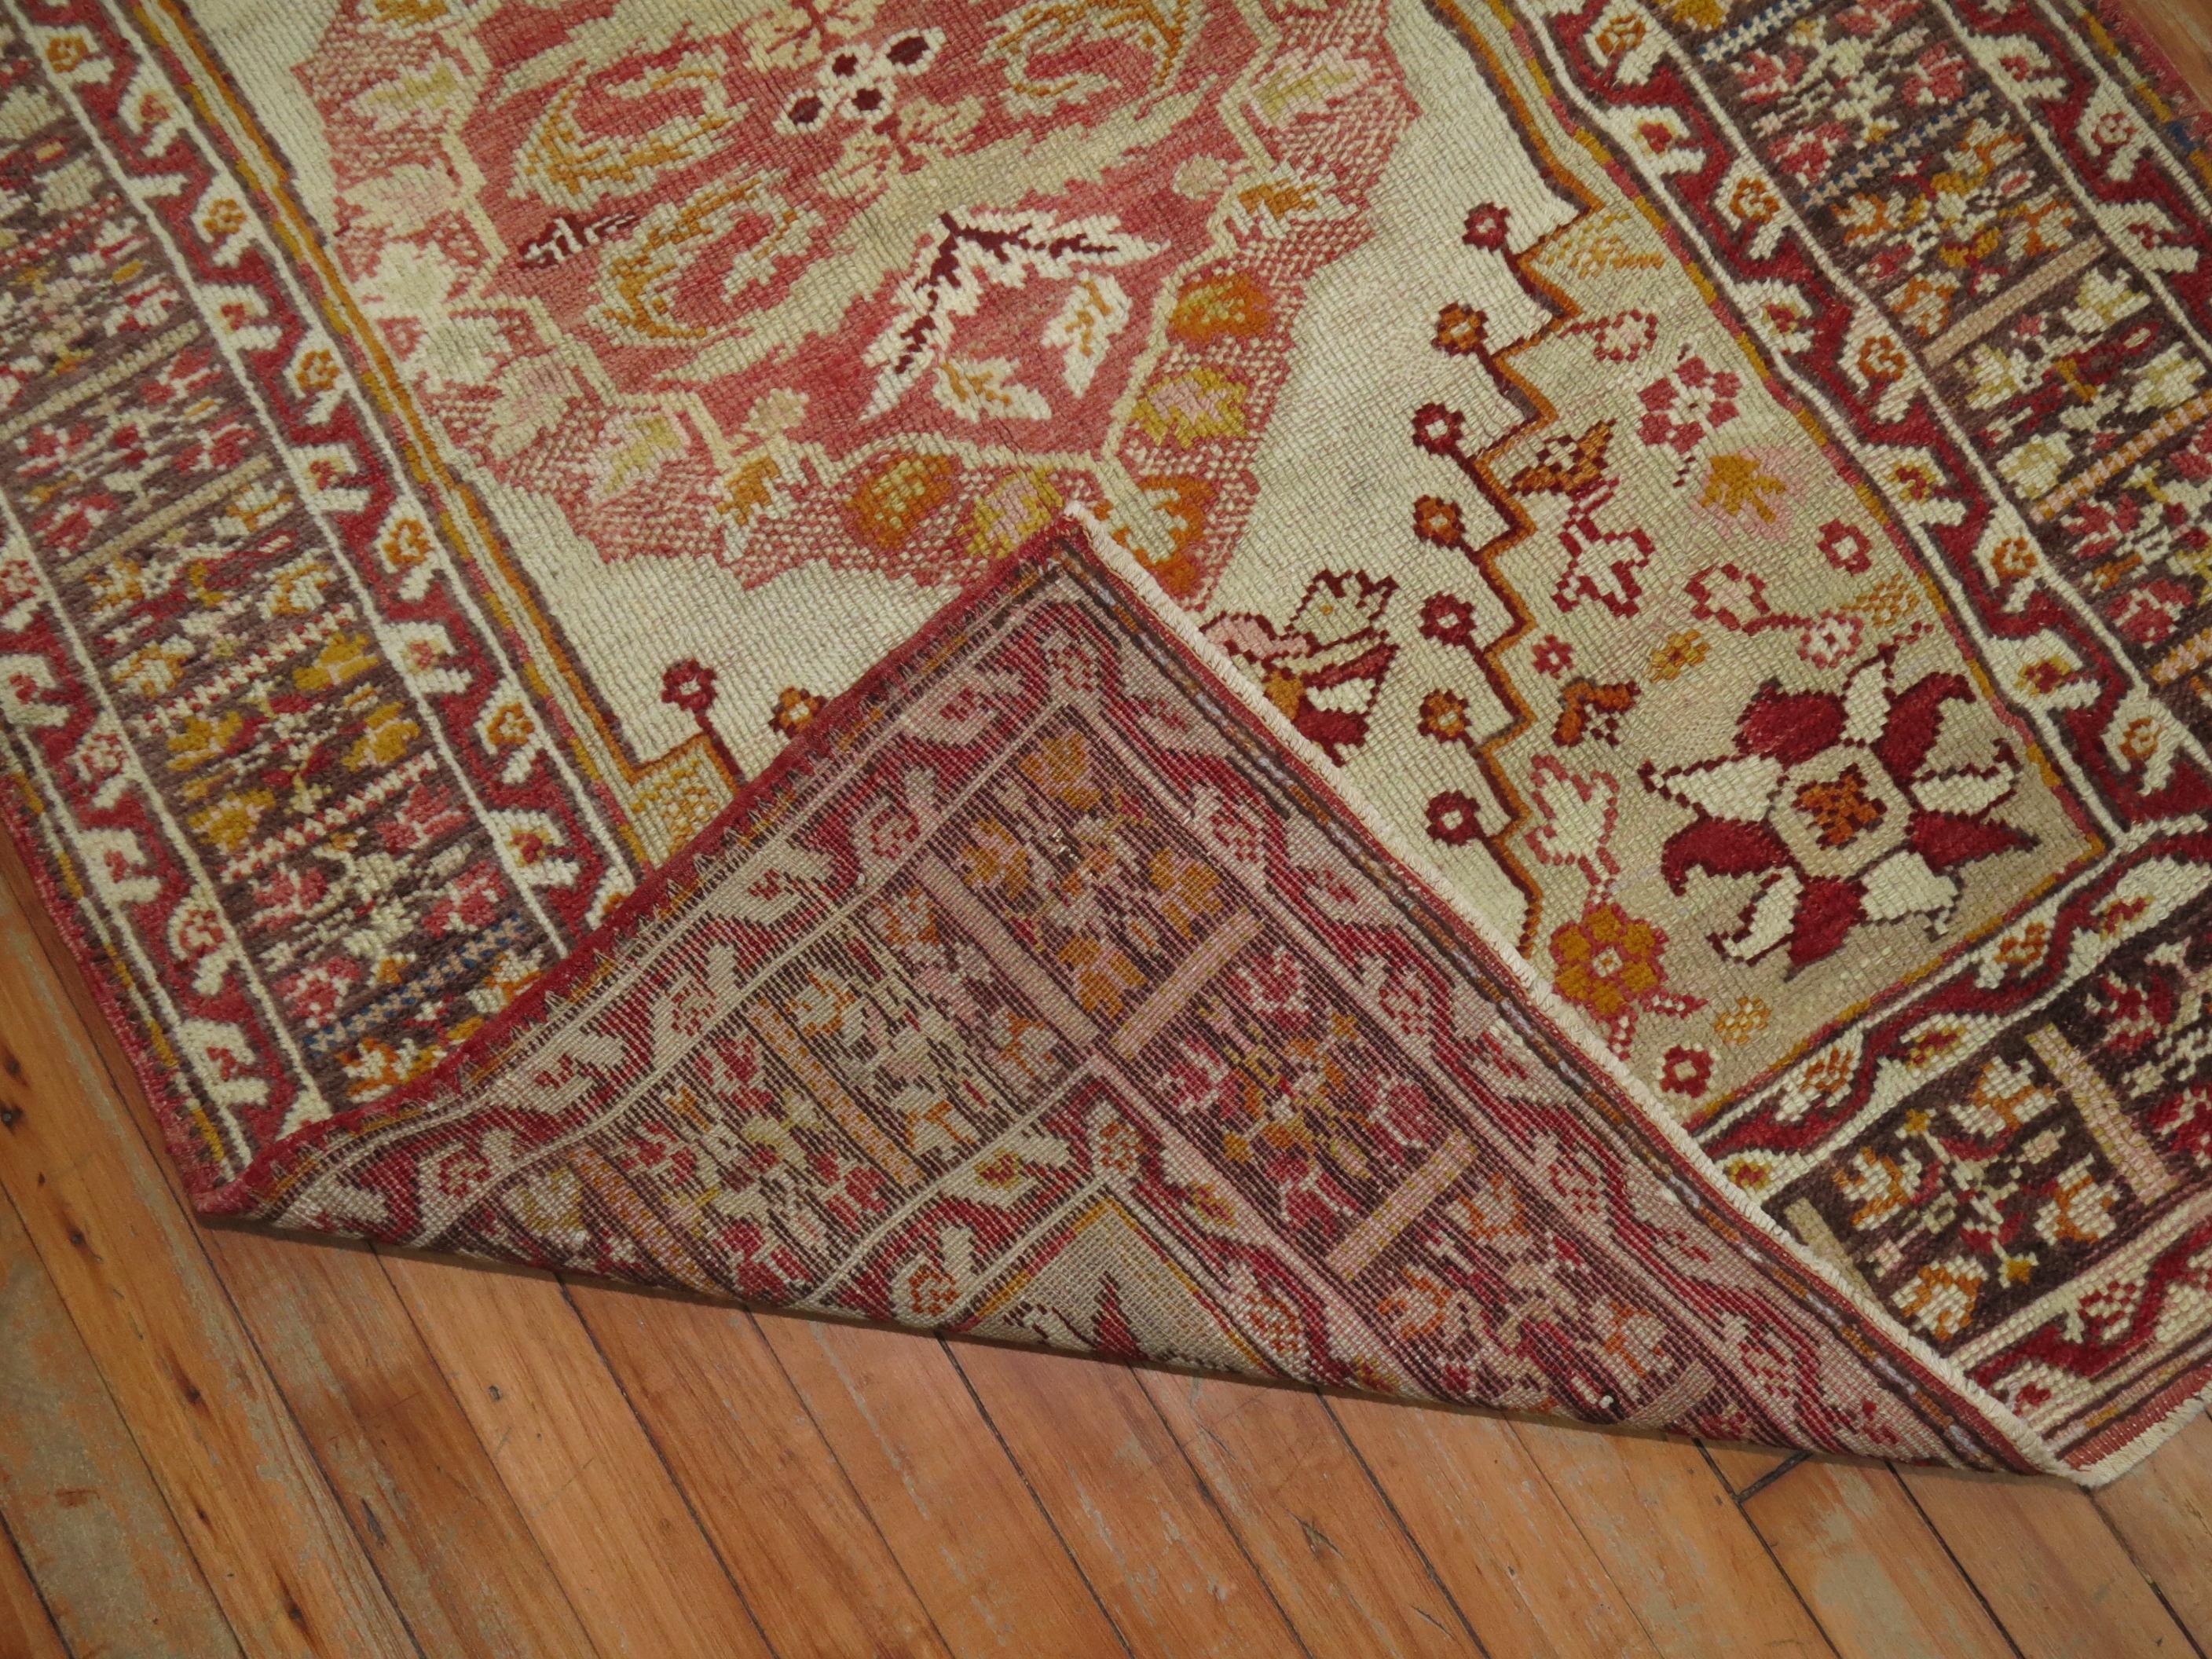 Ein türkischer Teppich des frühen 20. Jahrhunderts in Streubesitzgröße. Elfenbein, Rot, Braun und Kamel

Maße: 3'3'' x 4'9''.
 